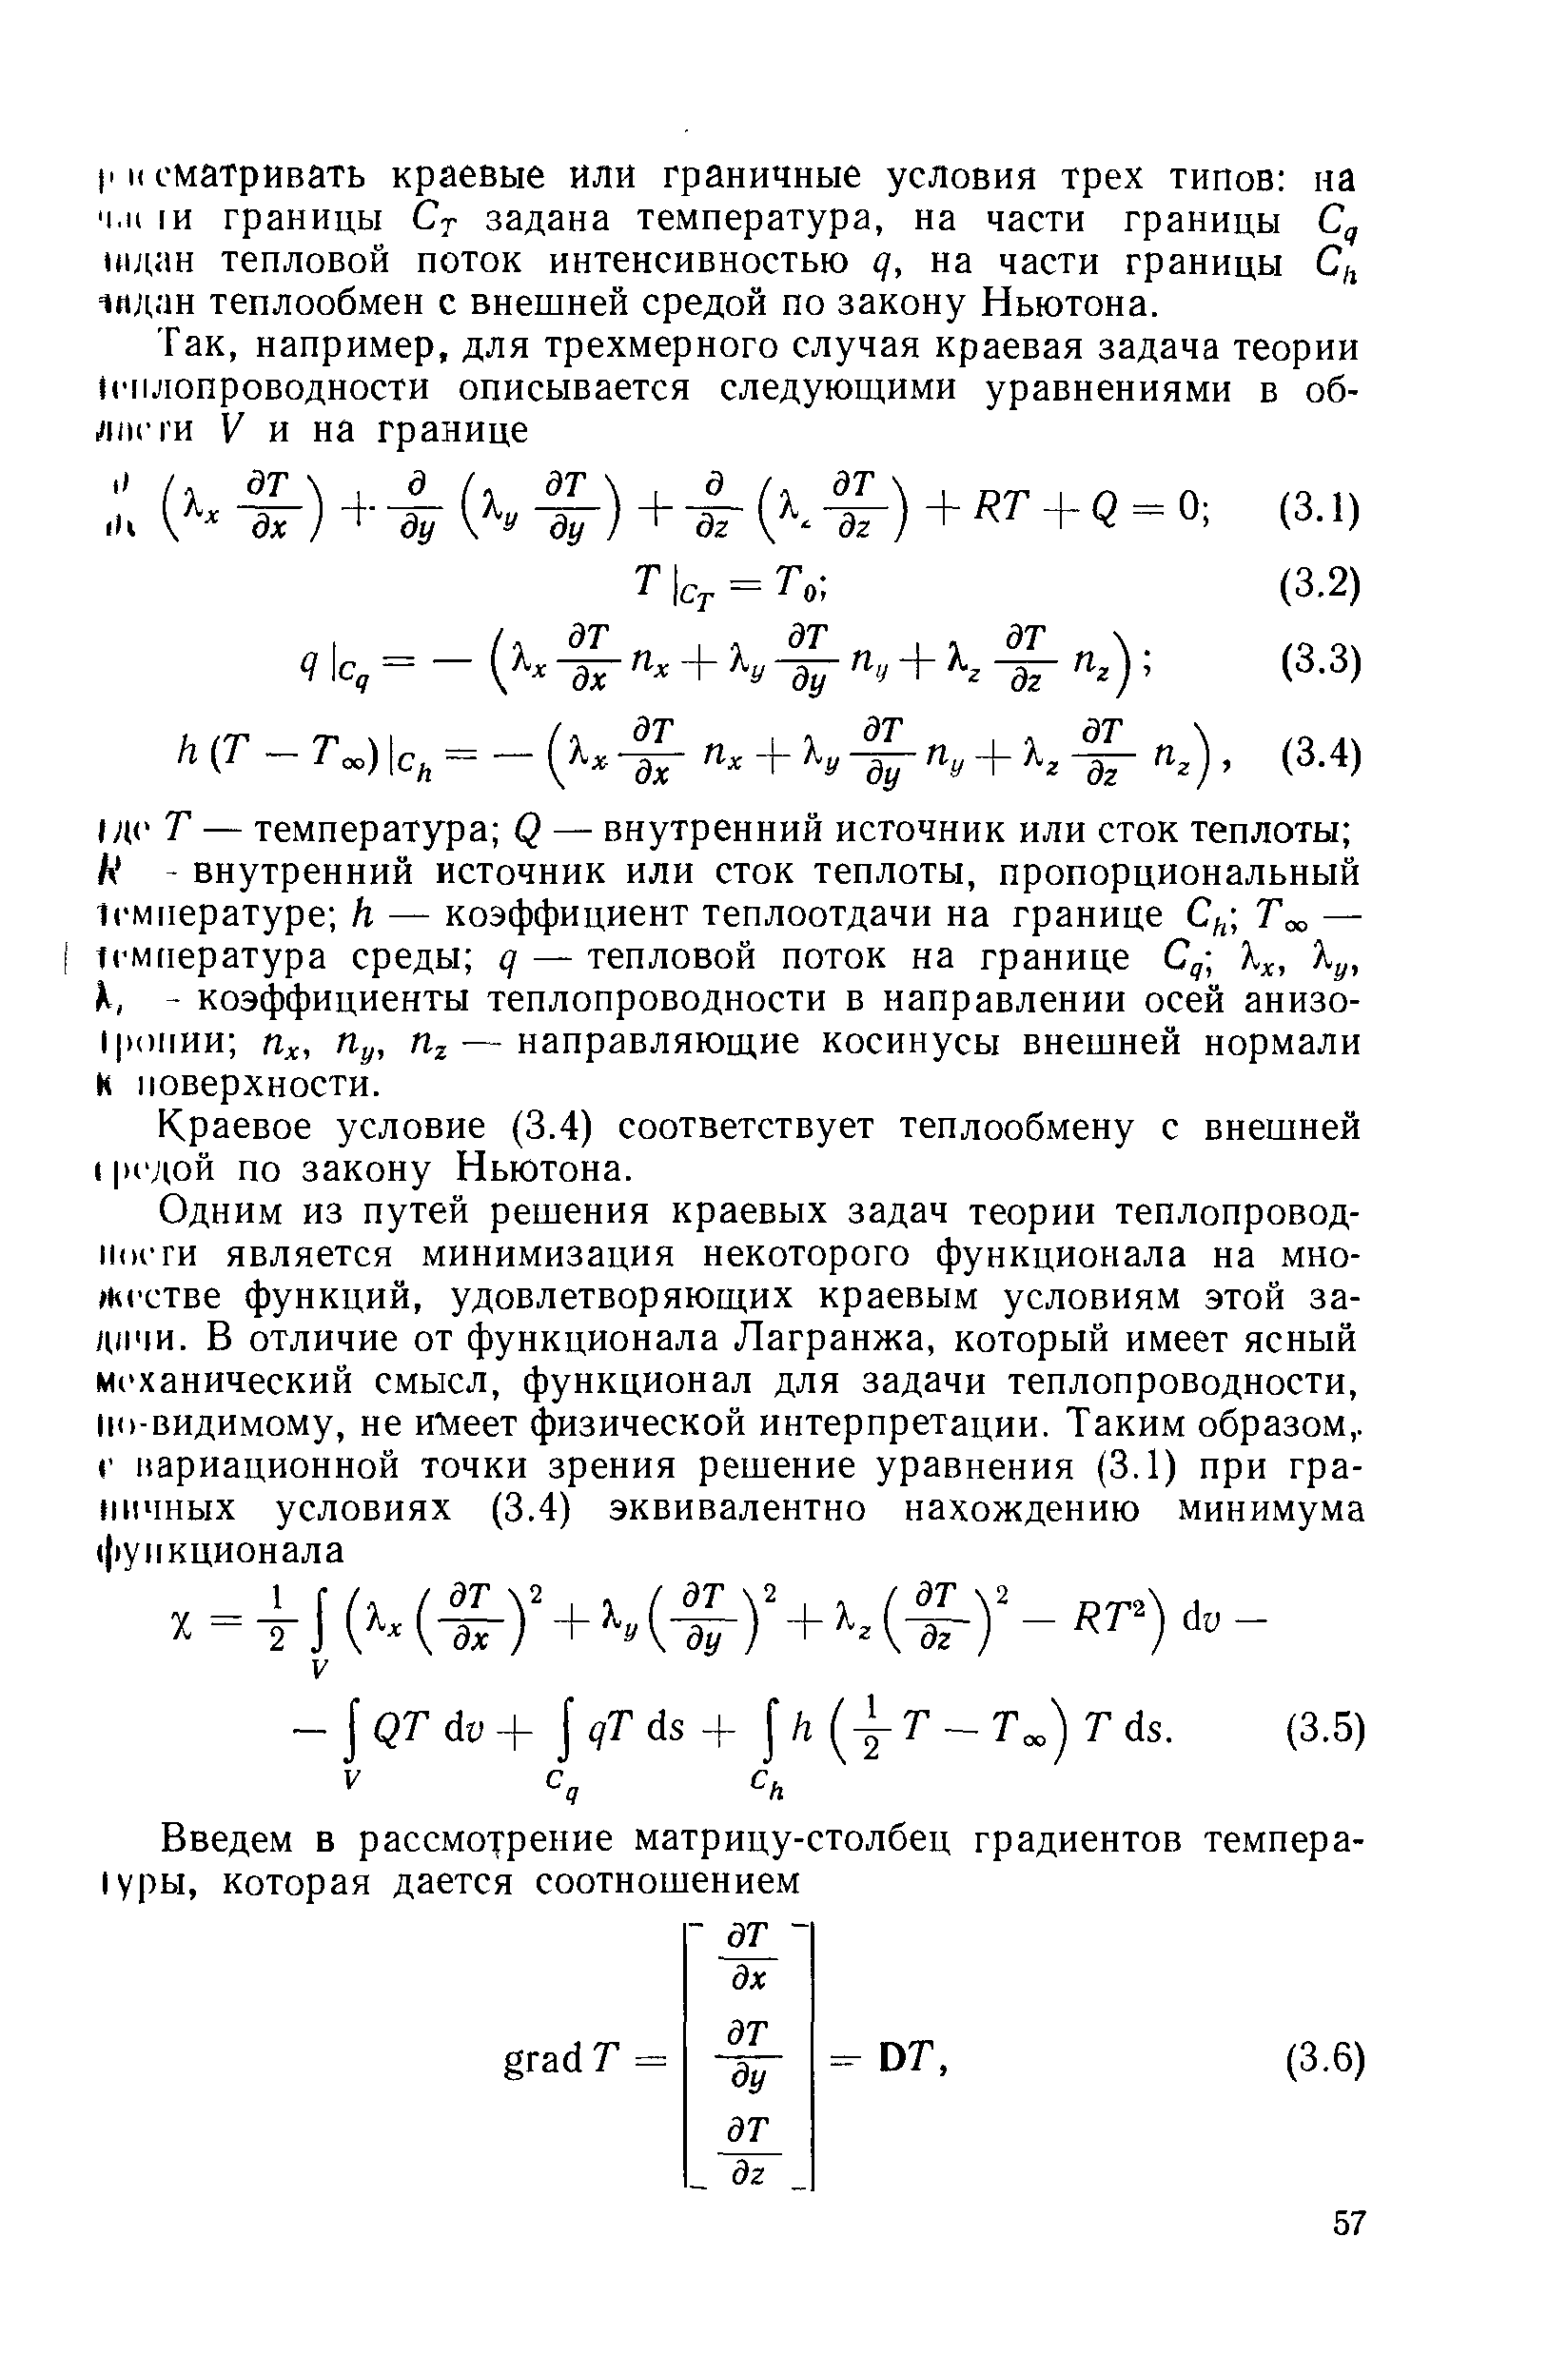 Краевое условие (3.4) соответствует теплообмену с внешней 1 к дой по закону Ньютона.
